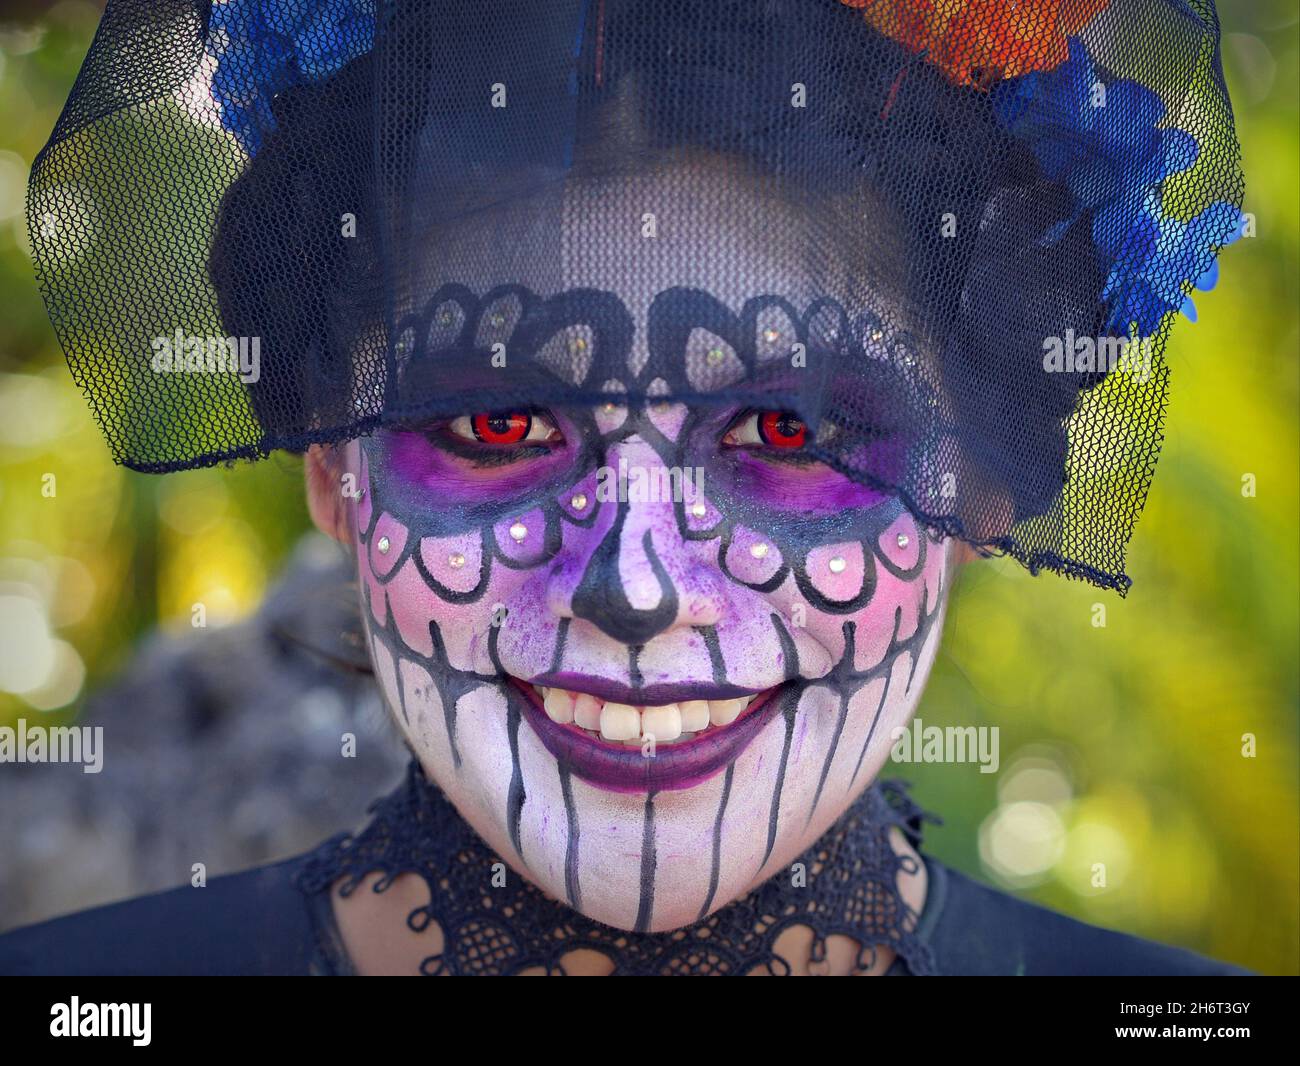 Kostümierte junge, hübsche mexikanische Yucatecan-Frau mit Gesichtsbemalung und orangefarbenen Kontakten lächelt den Betrachter am Tag der Toten (Día de los Muertos) an. Stockfoto